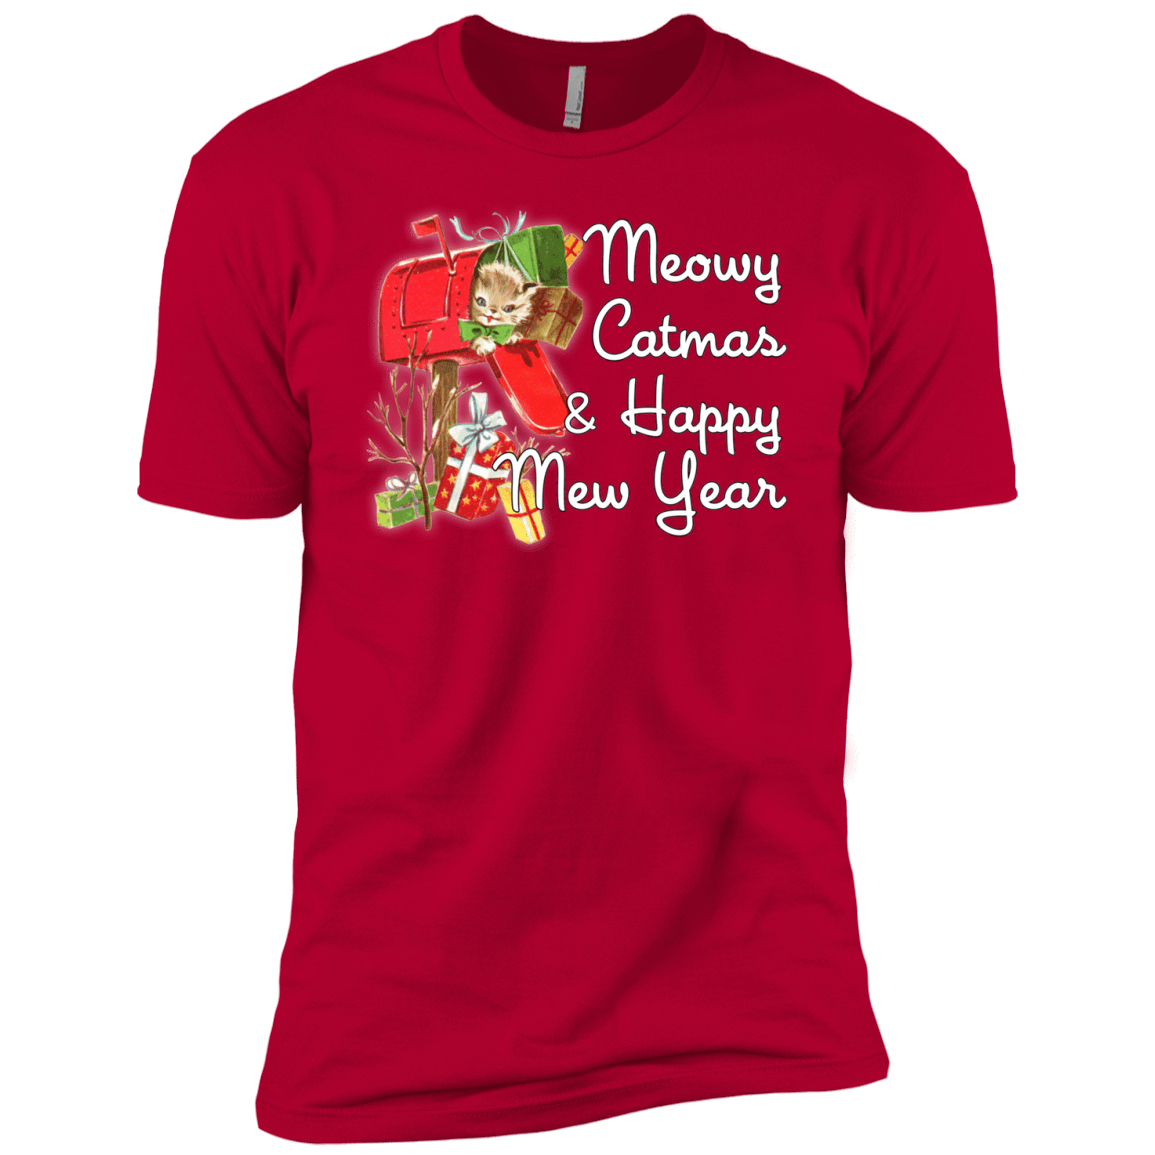 T-Shirts Red / YXS Meowy Catmas Boys Premium T-Shirt